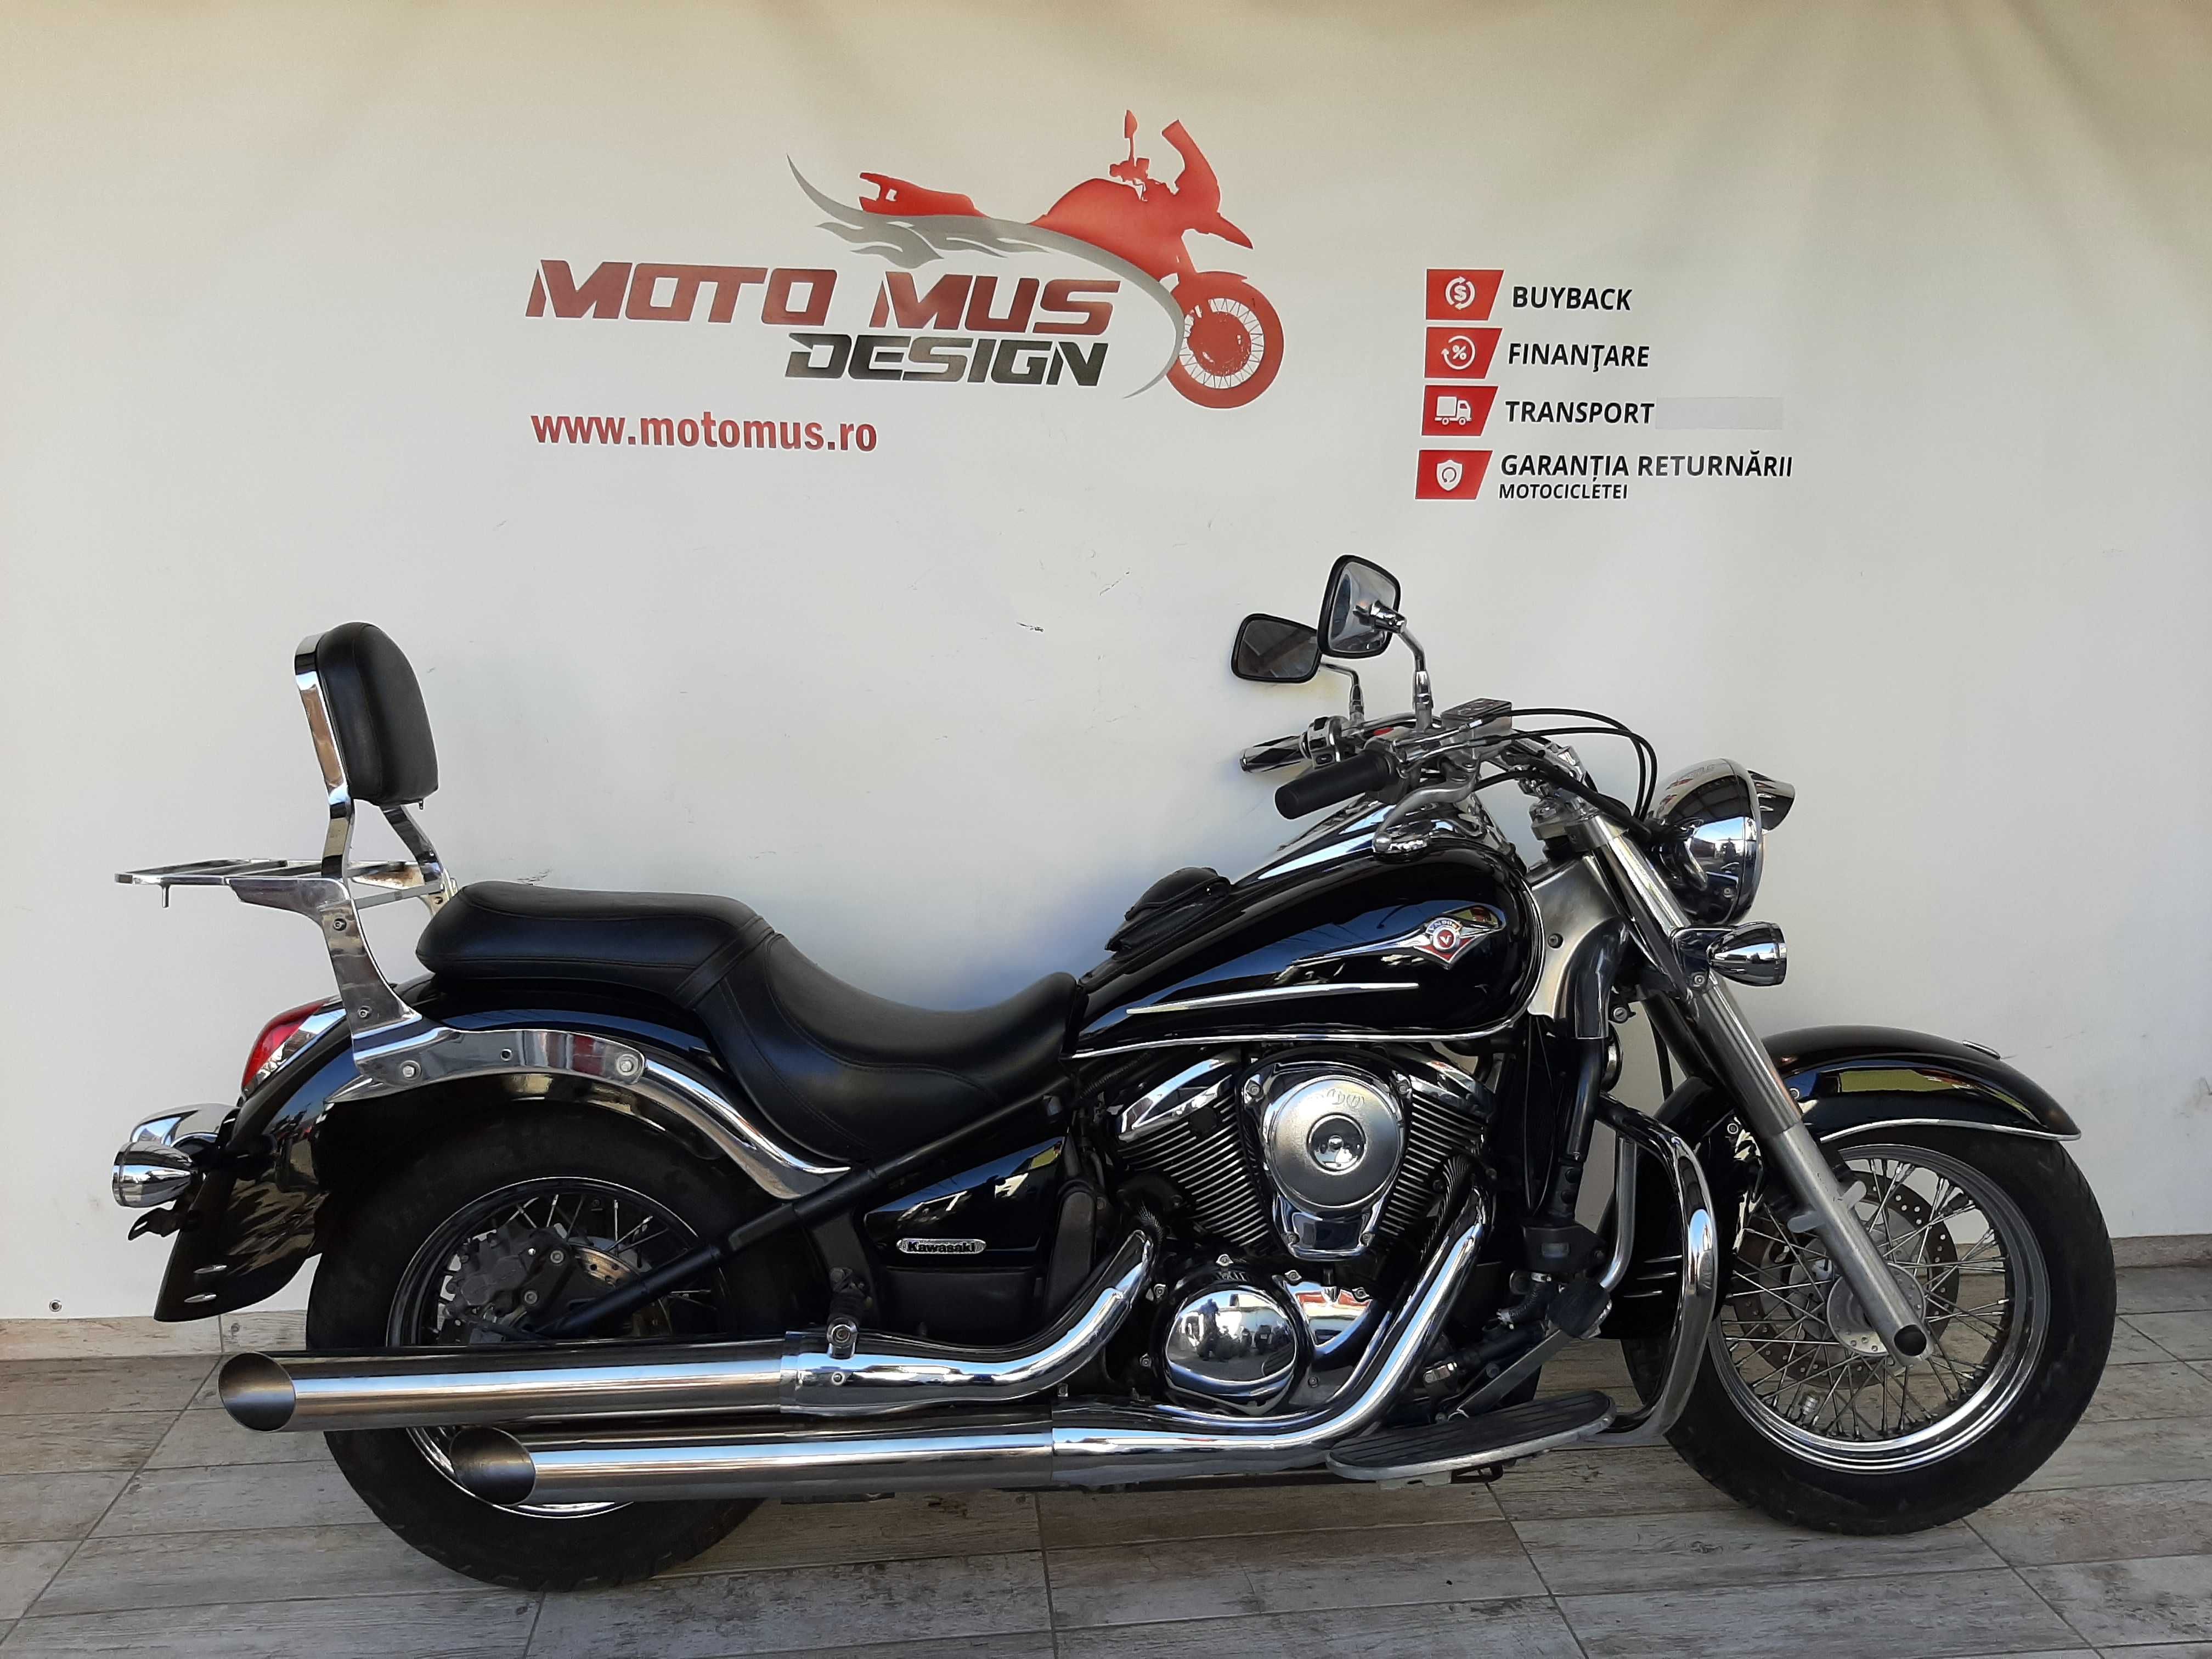 MotoMus vinde Motocicleta Kawasaki VN900 Vulcan 900cc 50CP - K02775